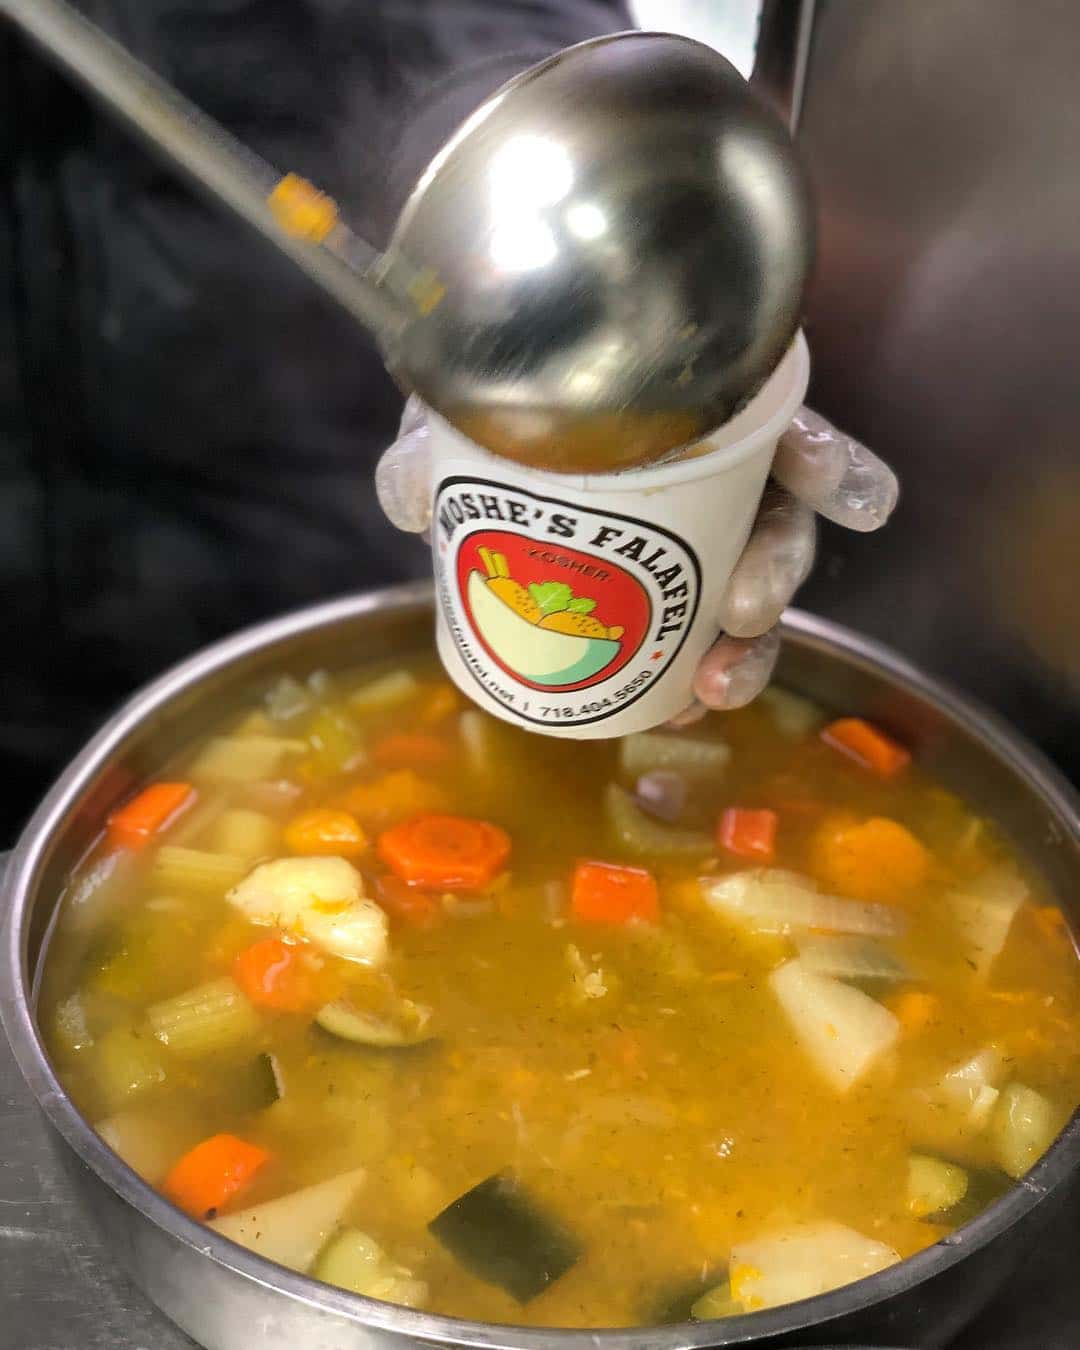 Moshe's Falafel Vegetable Soup